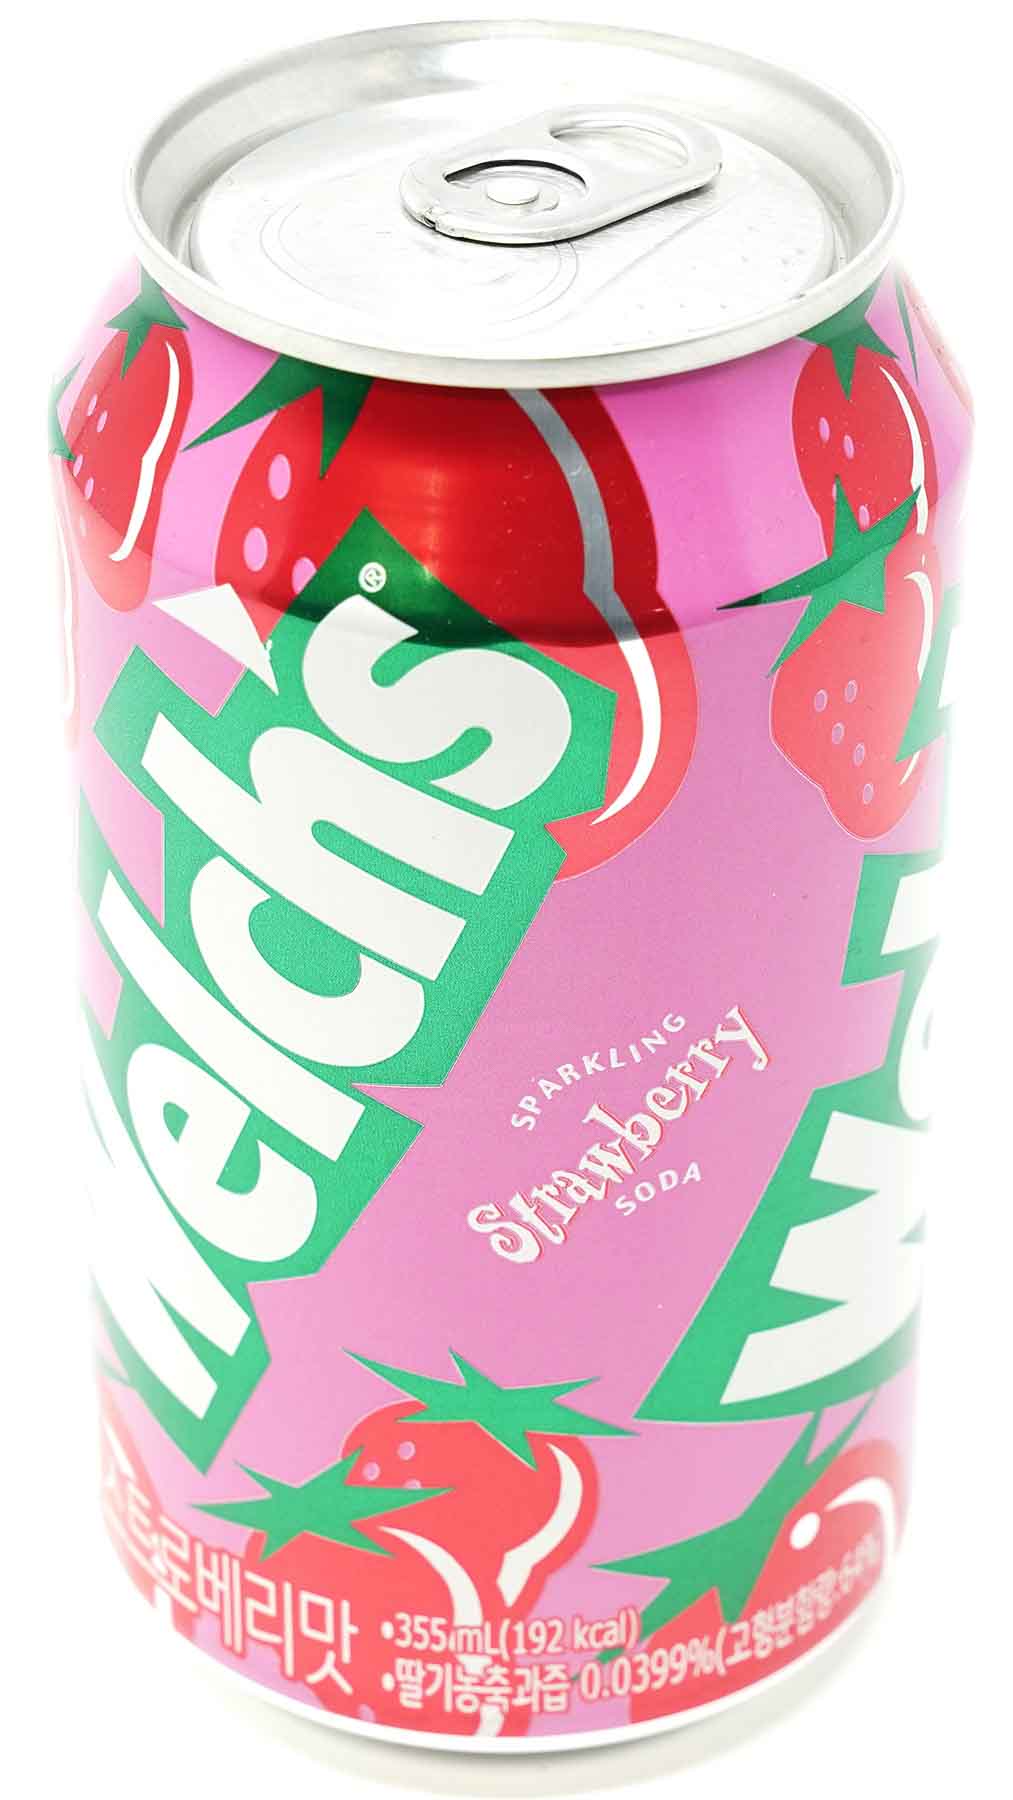 Welchs Soda Erdbeere, 355 ml